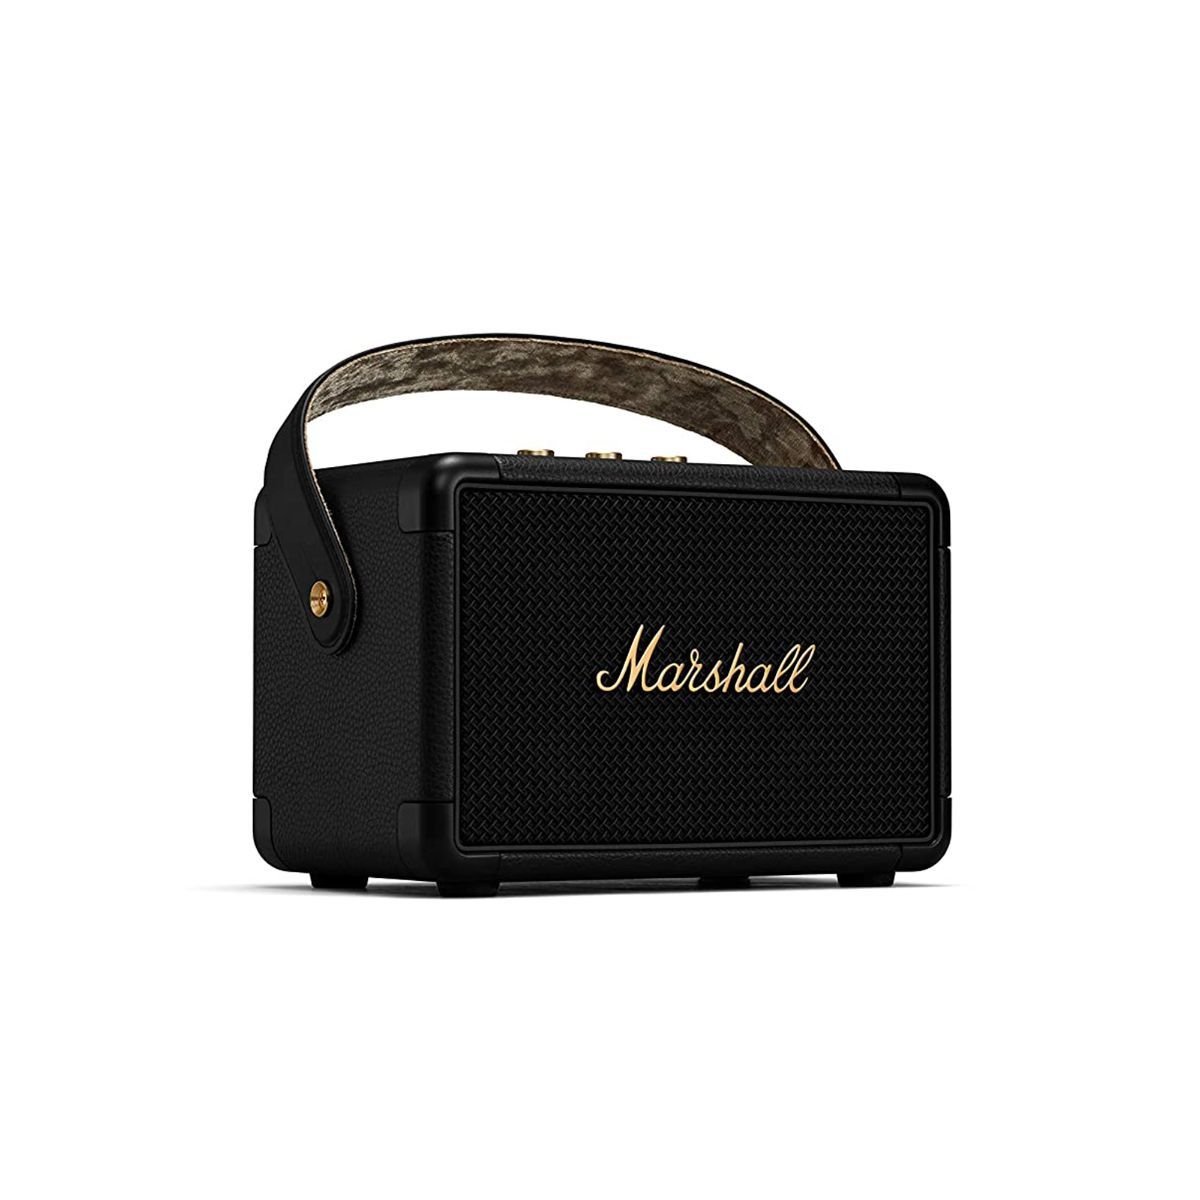 Marshall Kilburn II Portable Bluetooth Speaker Black & Brass